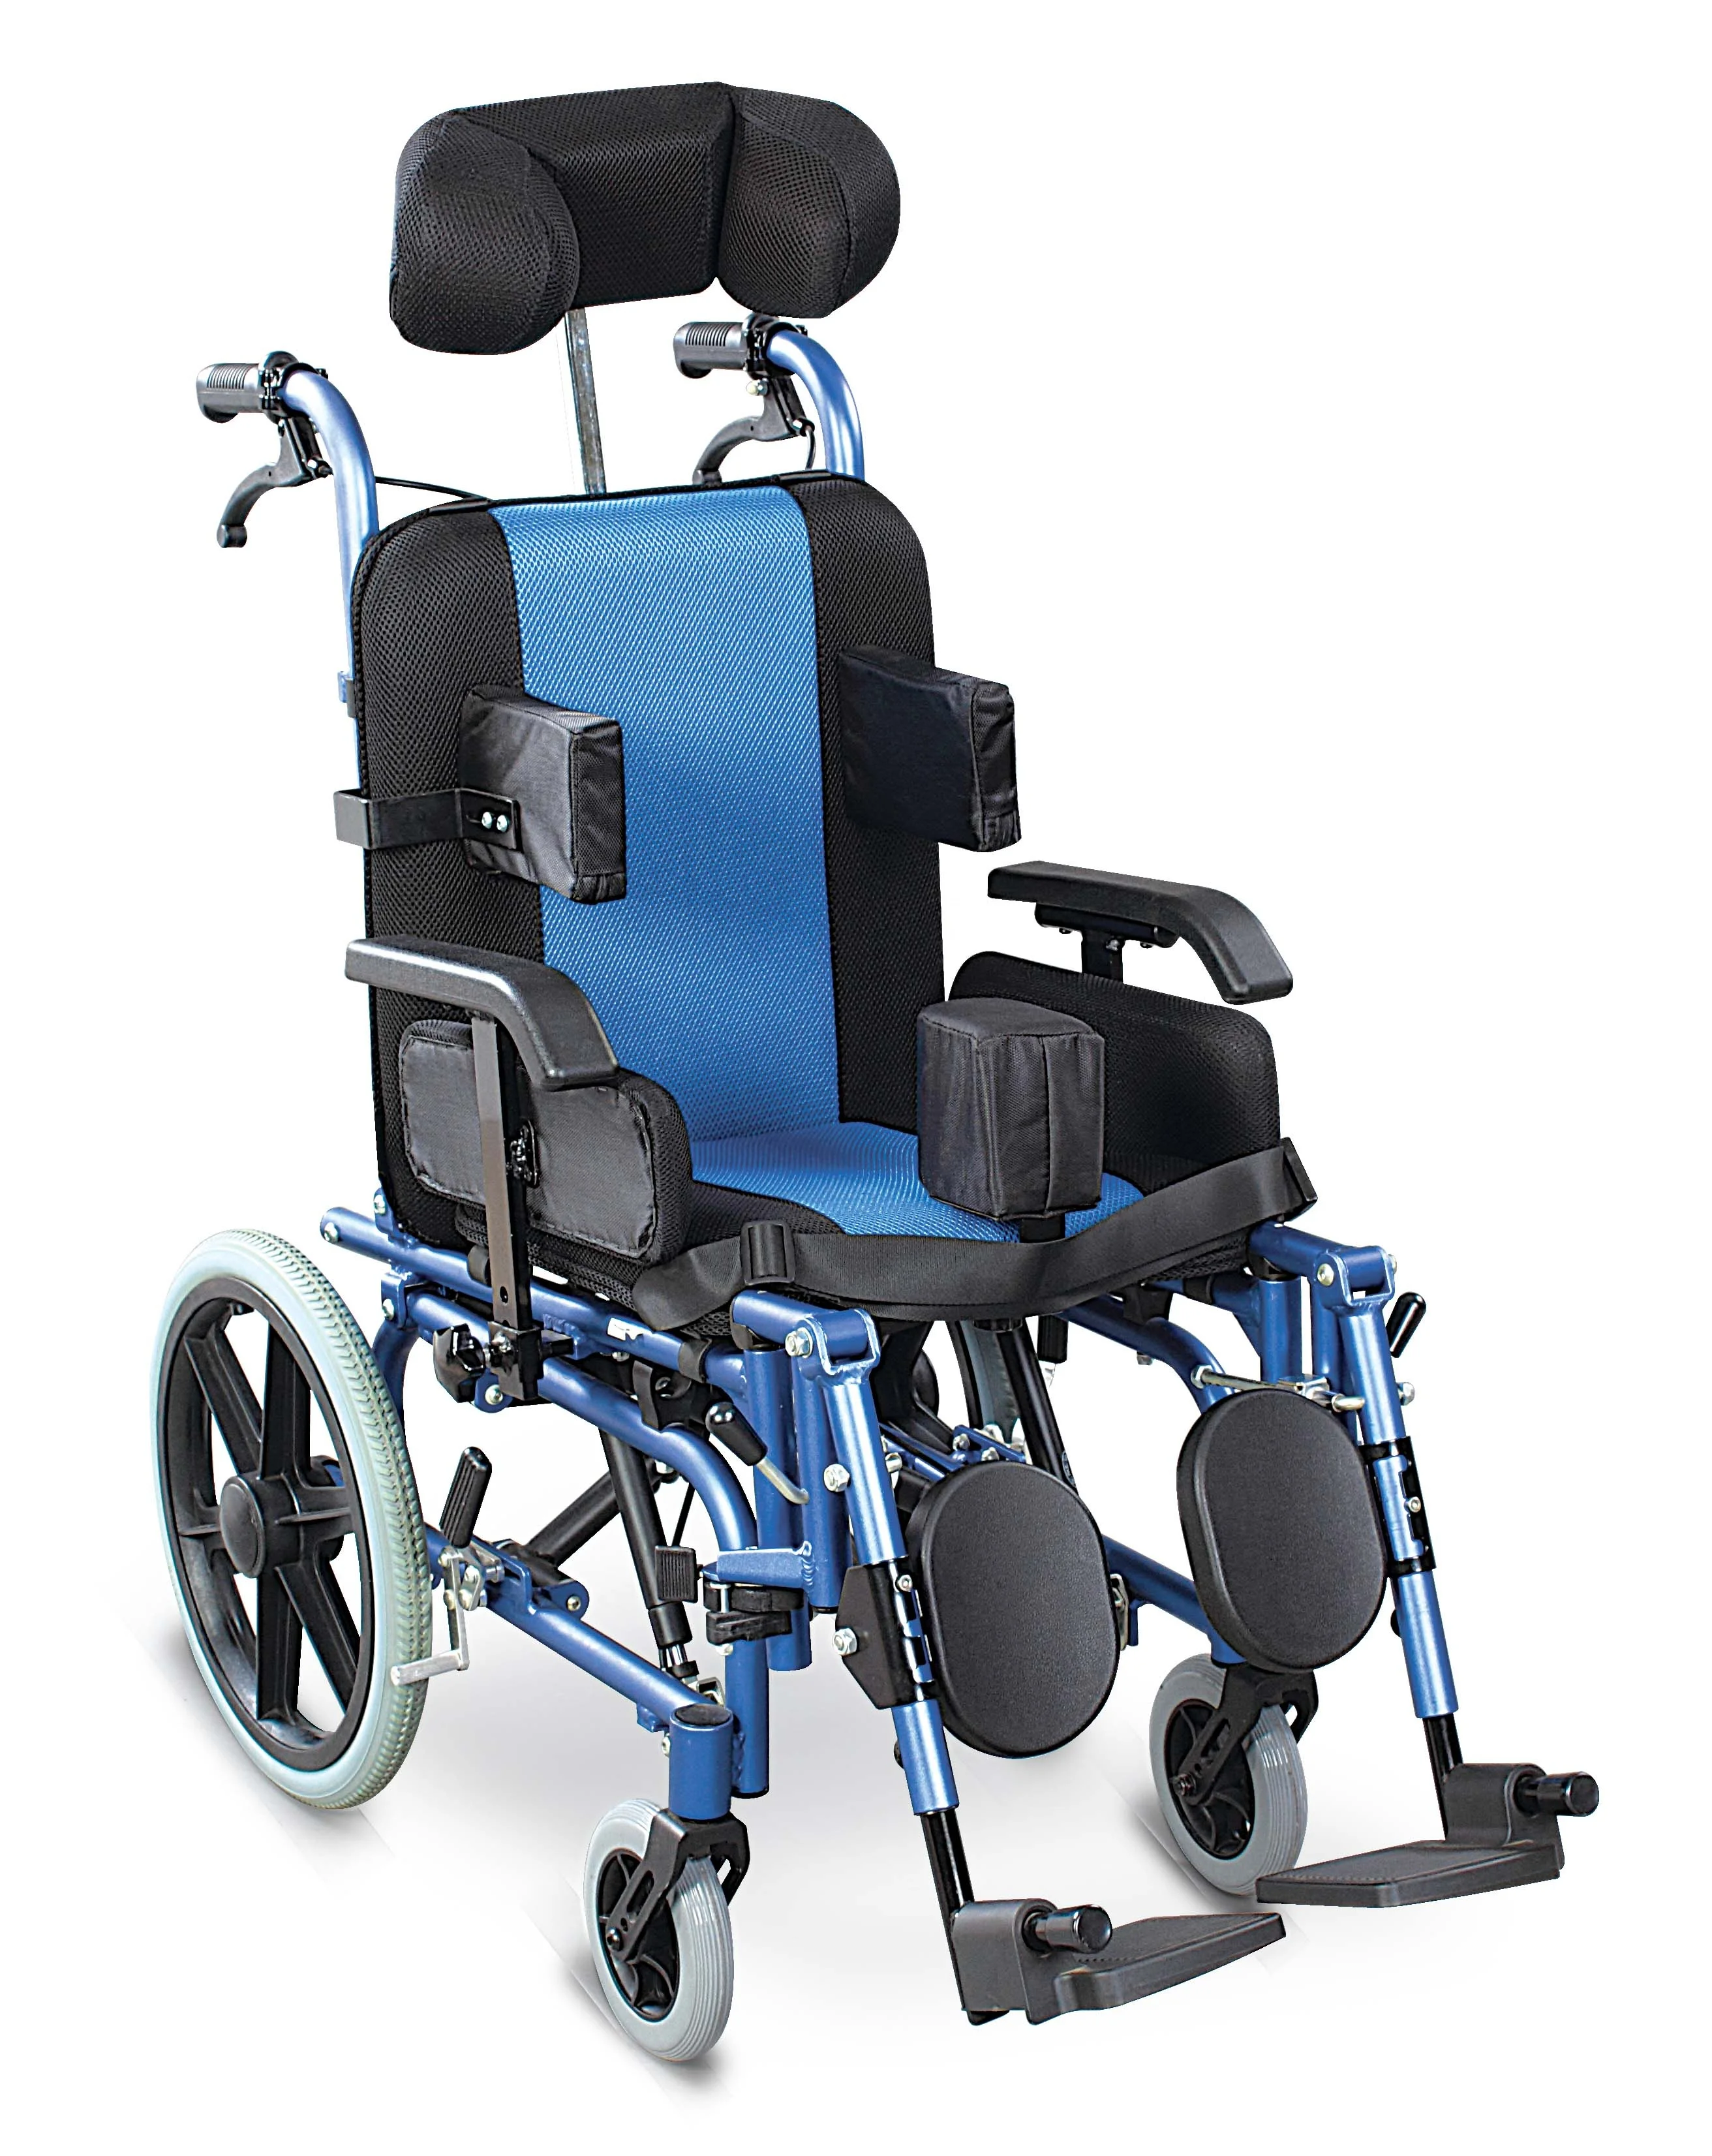 Сиденье коляска для ребенка. Коляска ДЦП инвалидная Ортоника. Ortonica кресло-коляска для детей ДЦП. Ортоника коляска для детей с ДЦП. Коляска инвалидная активного типа Ортоника для детей с ДЦП.